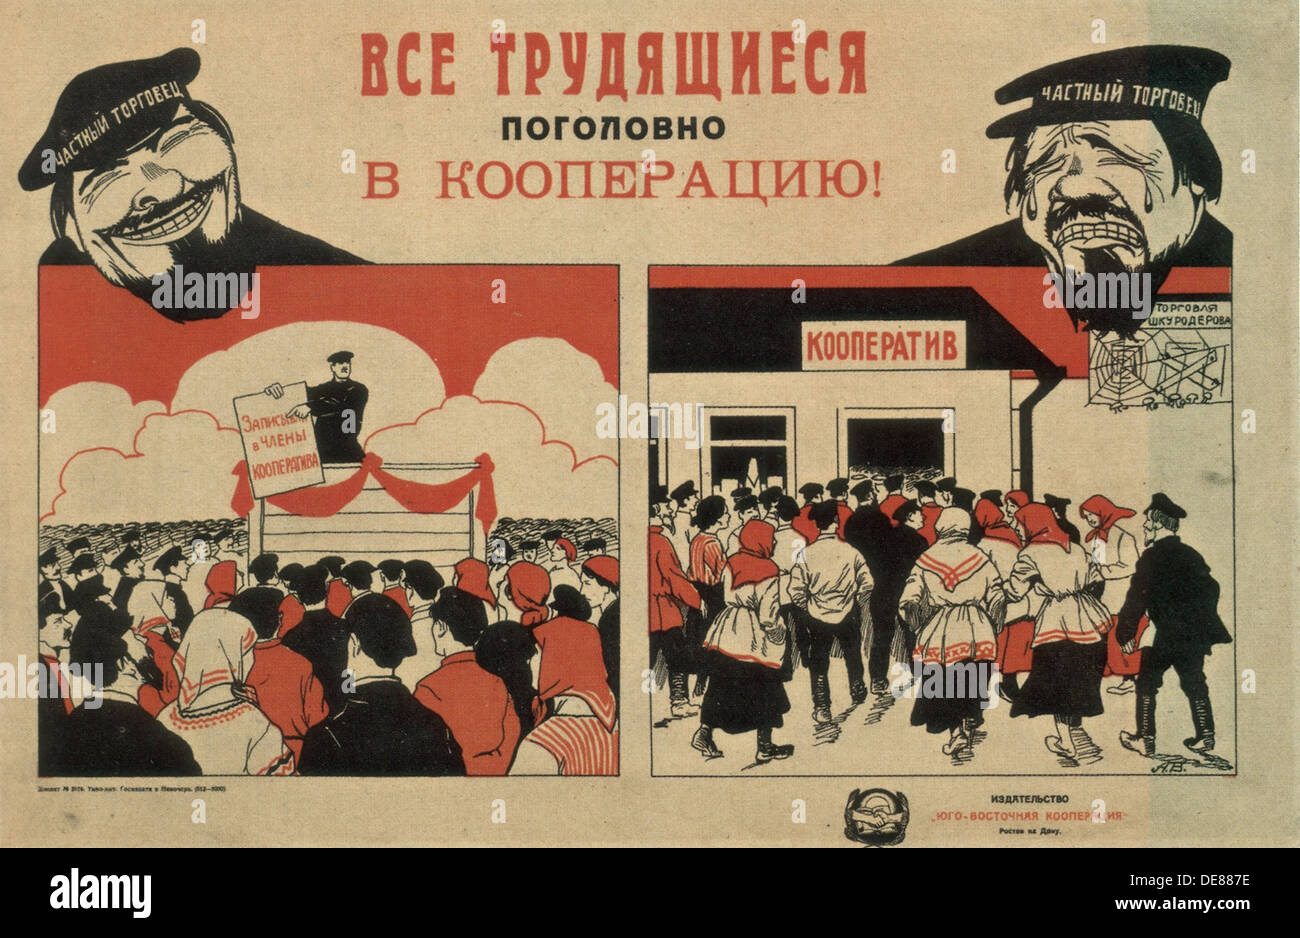 Осуществляют агитацию. НЭП плакаты 1921. Кооператив плакат СССР. Новая экономическая политика плакаты НЭП. НЭП плакаты кооперация.